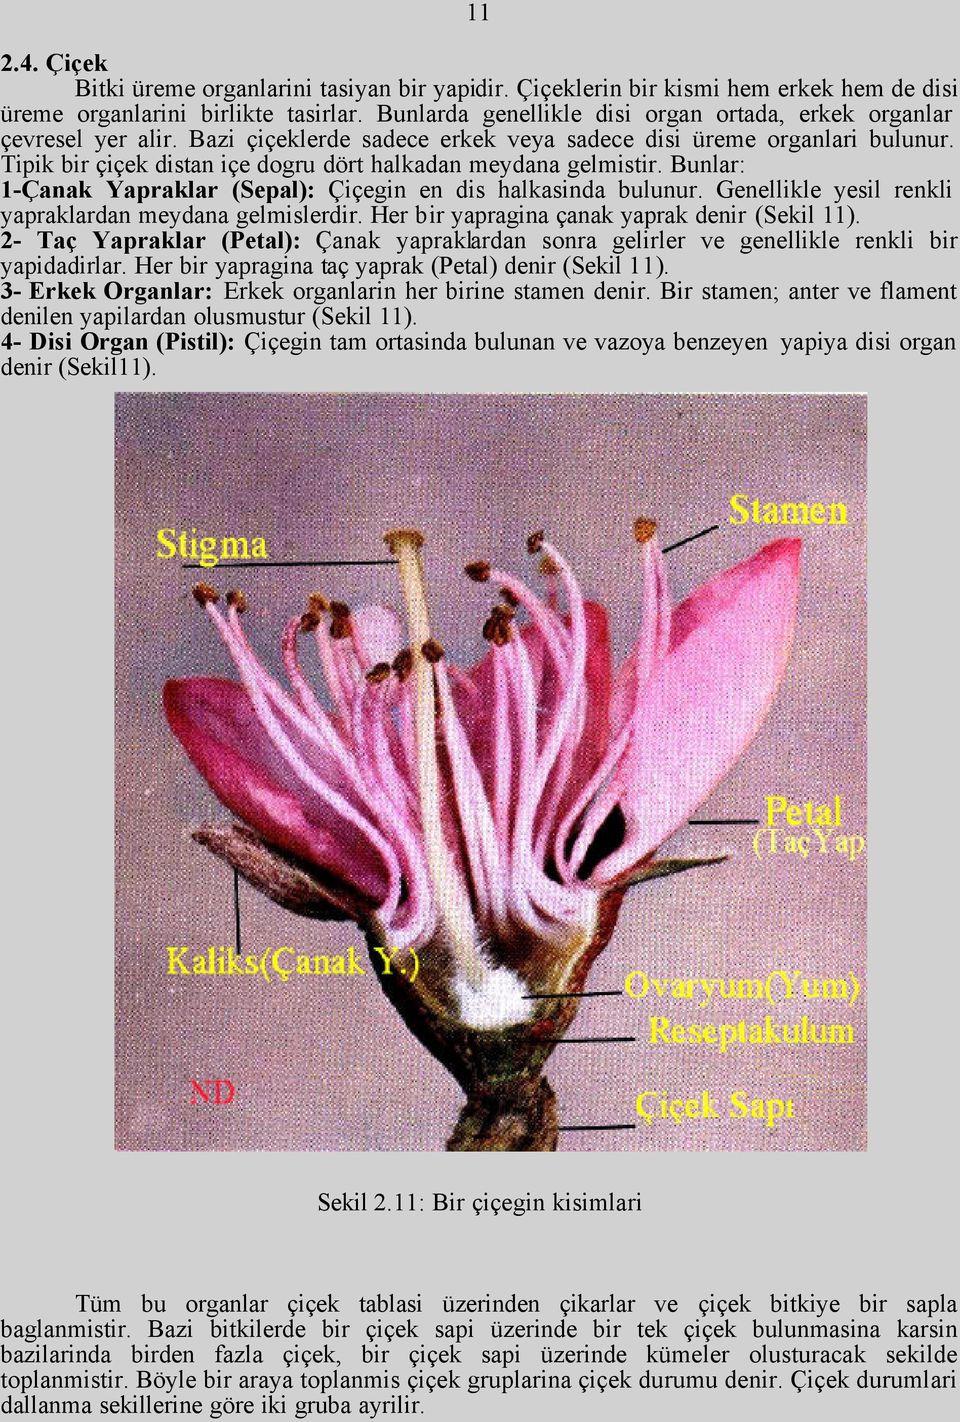 Tipik bir çiçek distan içe dogru dört halkadan meydana gelmistir. Bunlar: 1-Çanak Yapraklar (Sepal): Çiçegin en dis halkasinda bulunur. Genellikle yesil renkli yapraklardan meydana gelmislerdir.